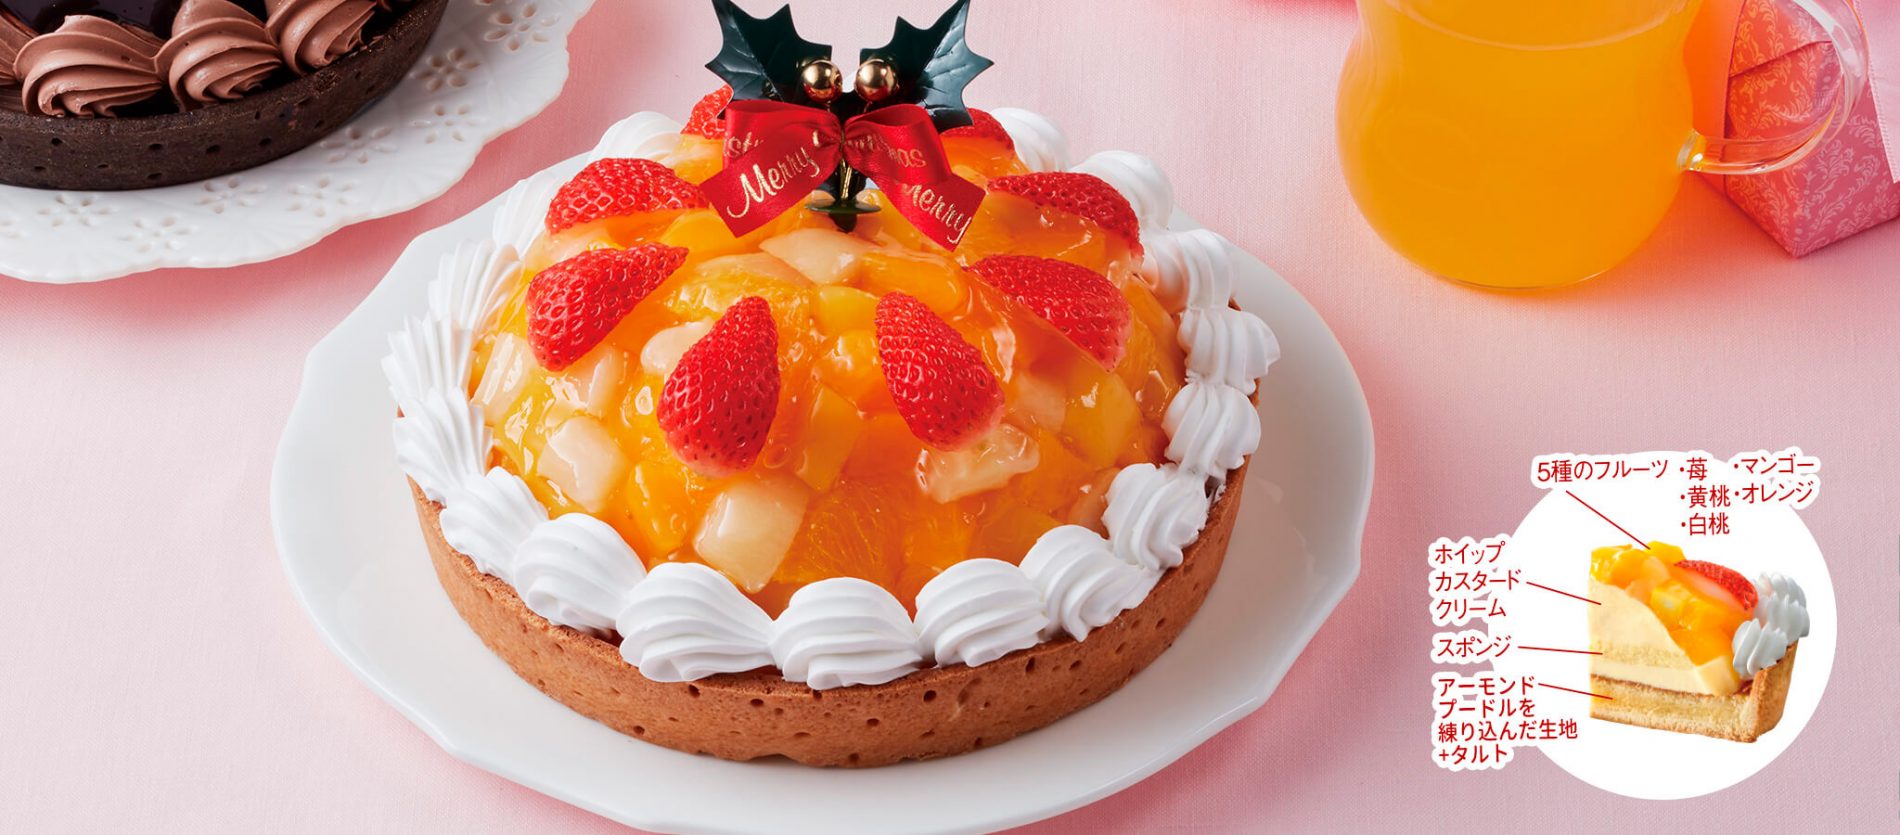 21年版 ヤマザキ 山崎製パン クリスマスケーキの予約方法 日々是楽日